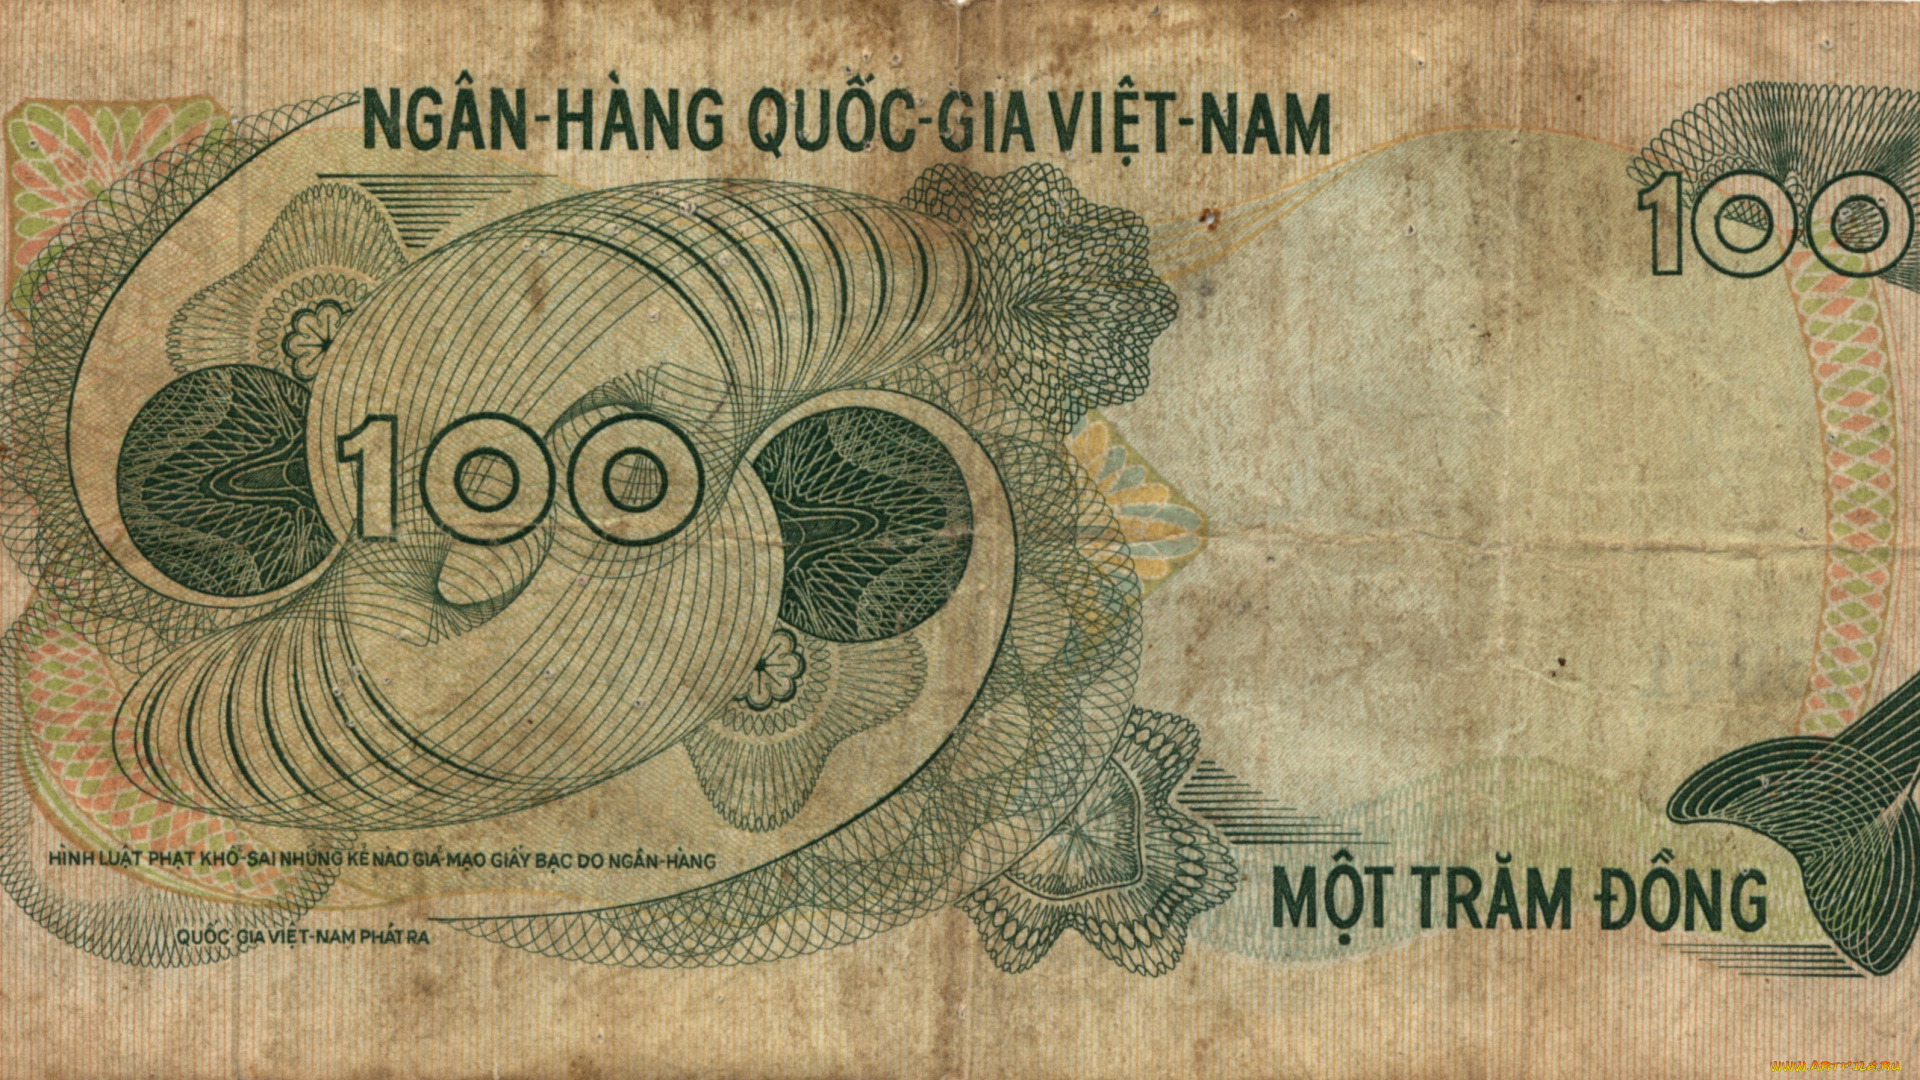 разное, золото, купюры, монеты, донг, банкнота, деньги, вьетнам